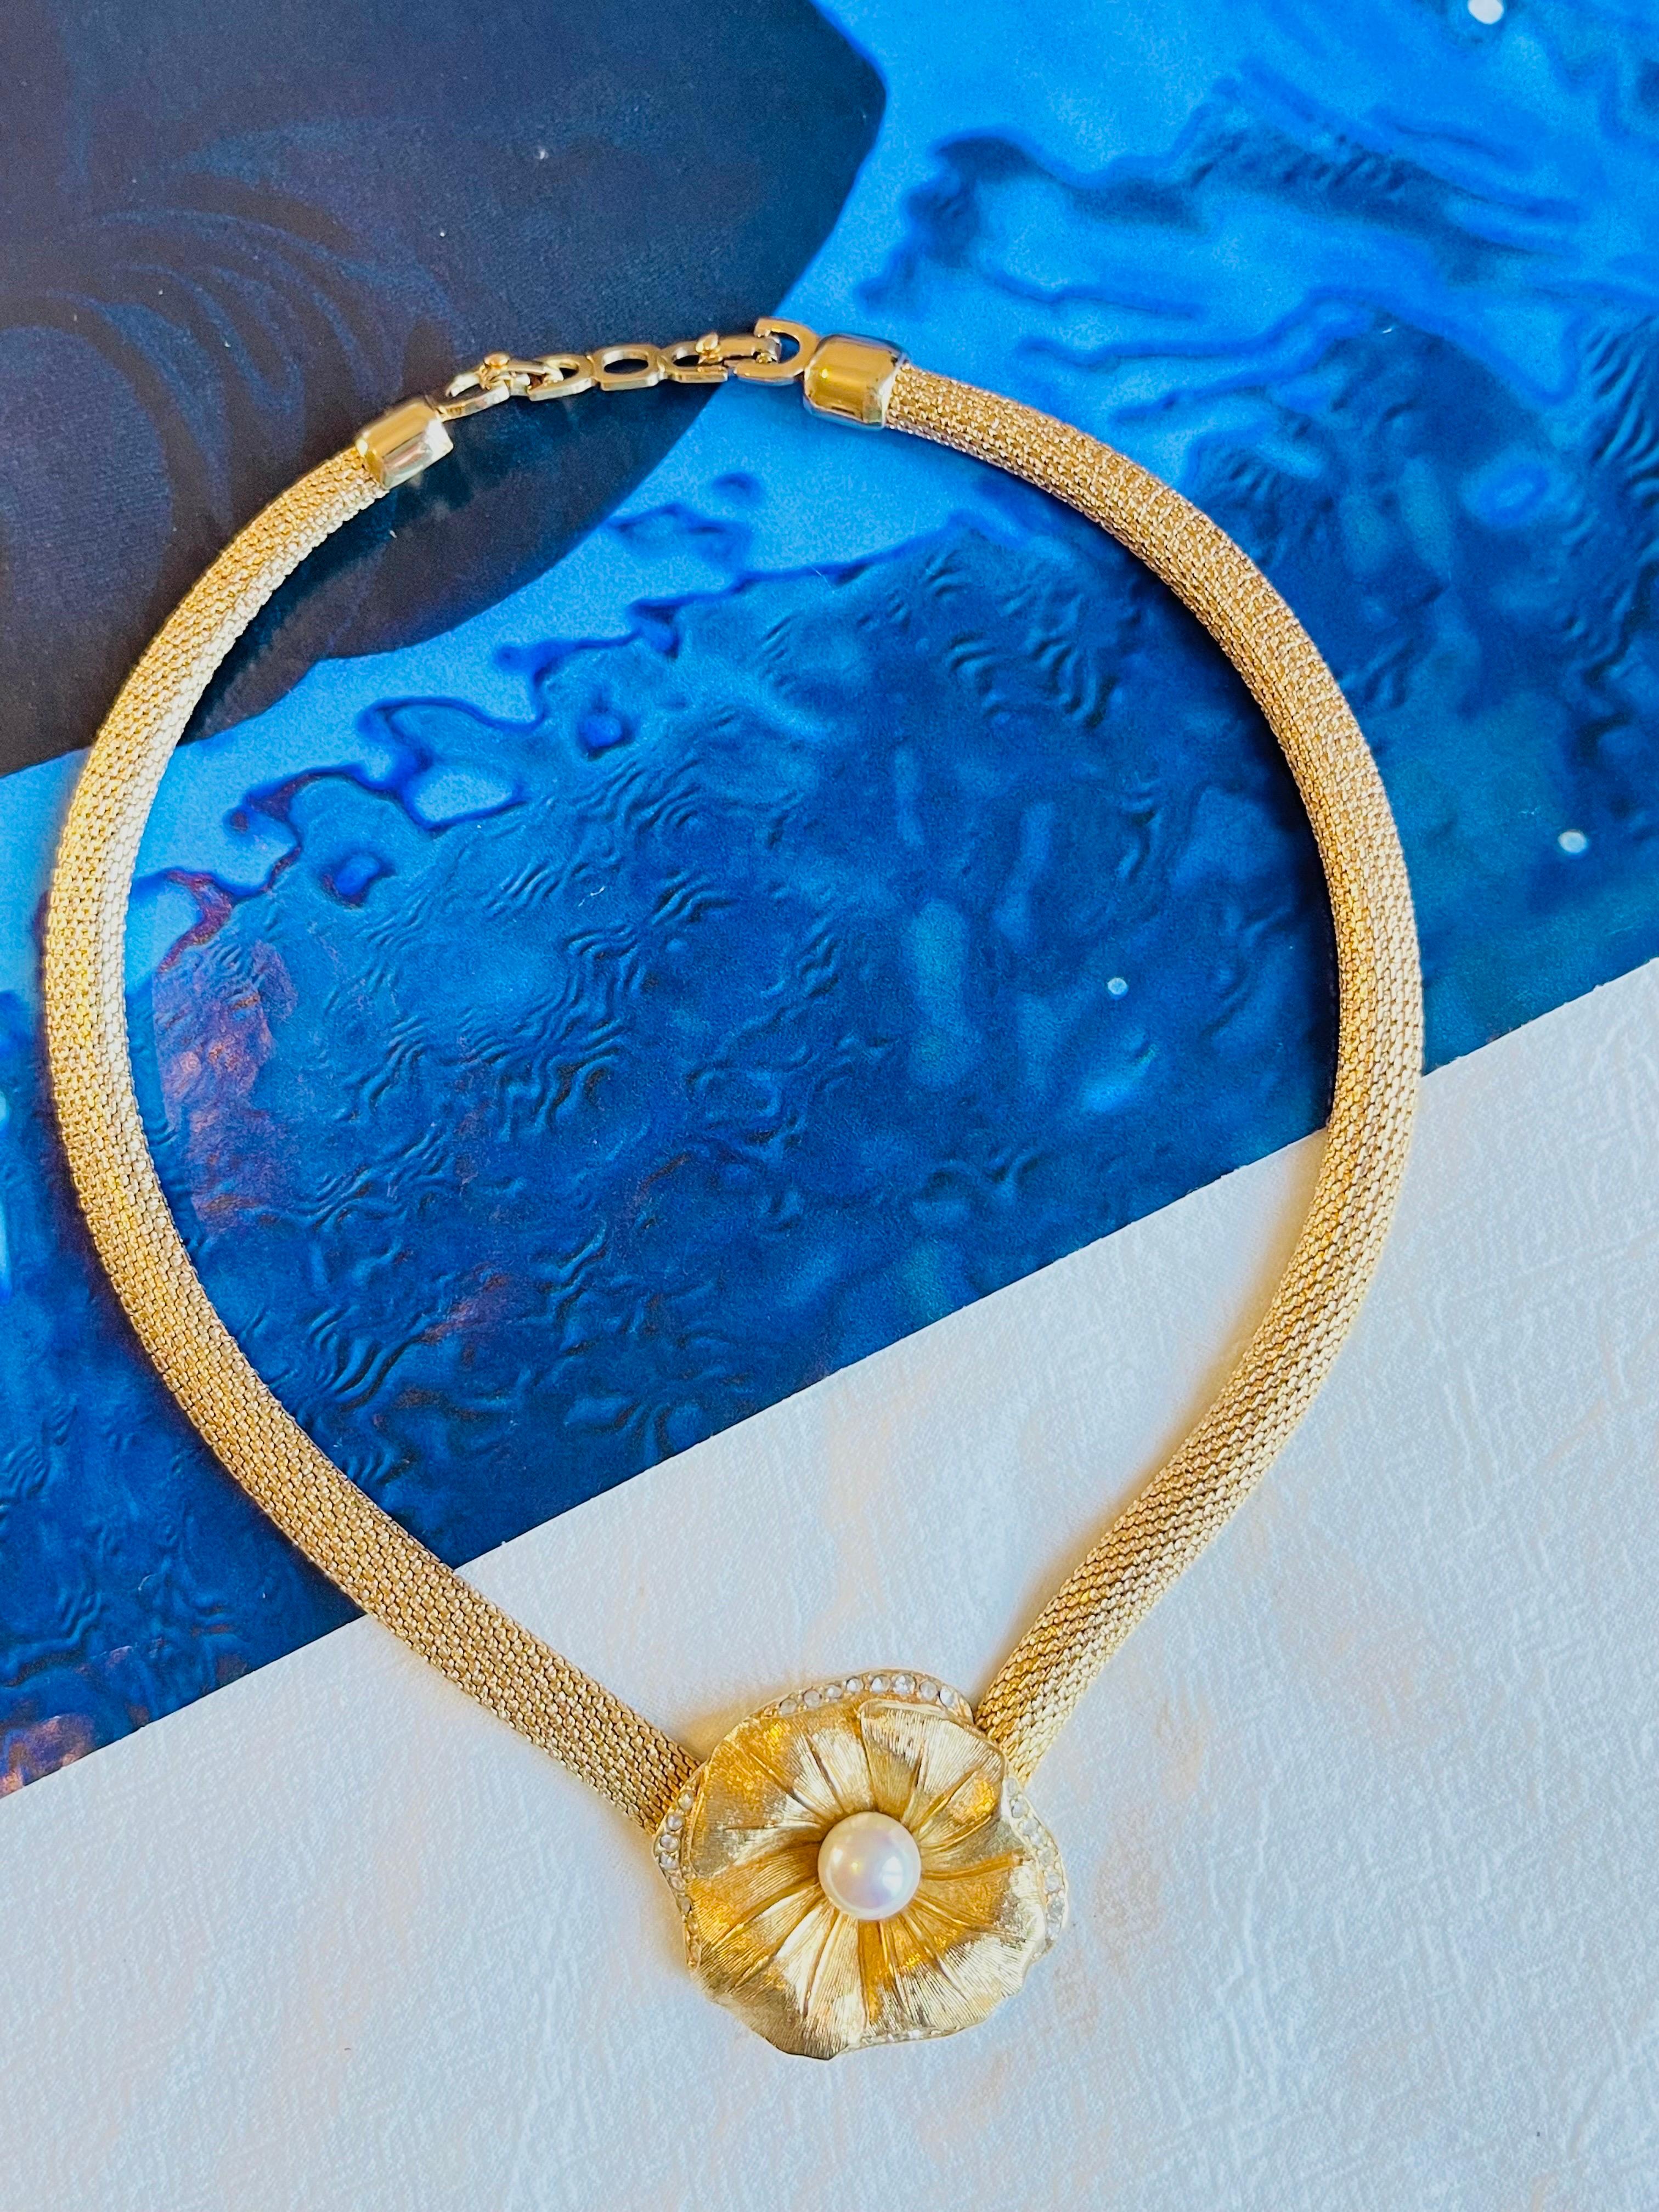 Christian Dior Vintage 1980s Blume Weiß Perlen Kristalle Anhänger Chunky Mesh Halskette, vergoldet

Sehr guter Zustand. Keine Kratzer oder Farbverluste, nur kleine dunkle Flecken auf der Rückseite, kaum wahrnehmbar. 100% echt.

Gezeichnet 'Chr.Dior